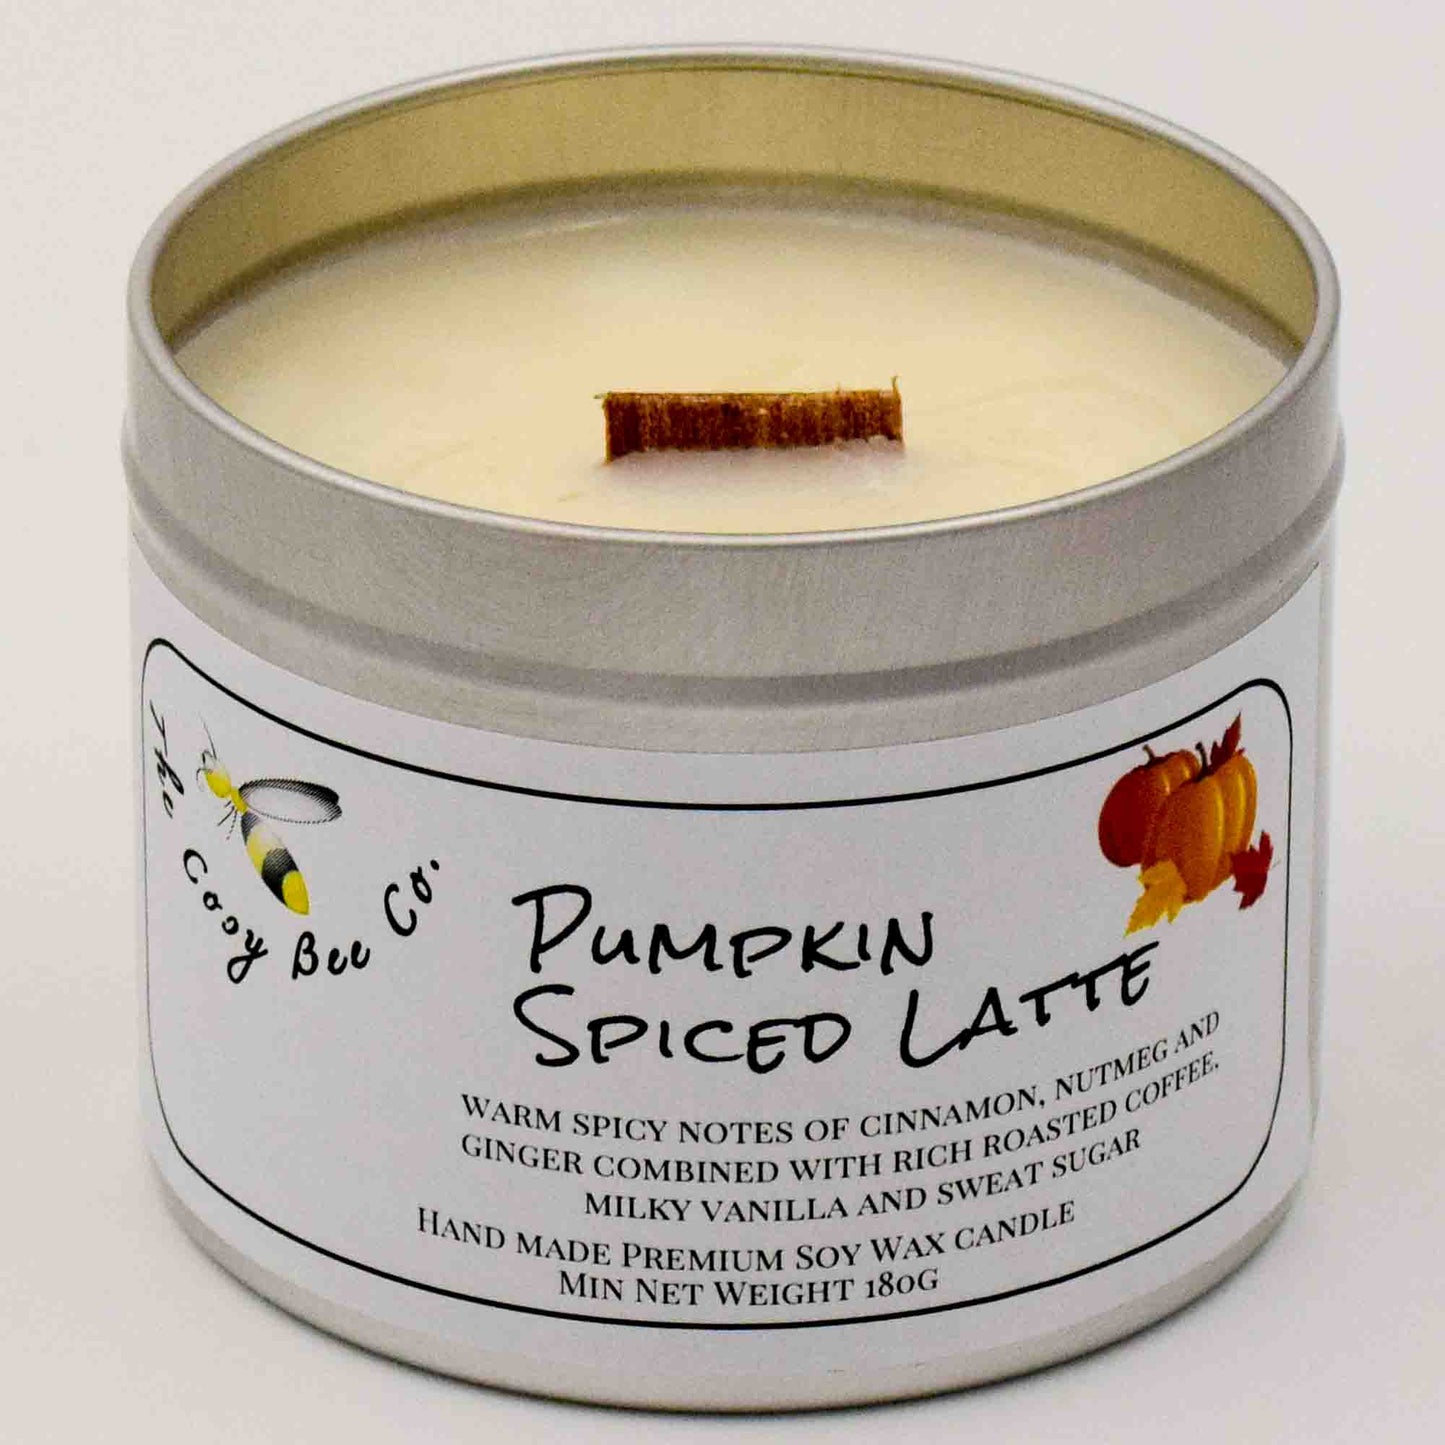 Pumpkin Spiced latte